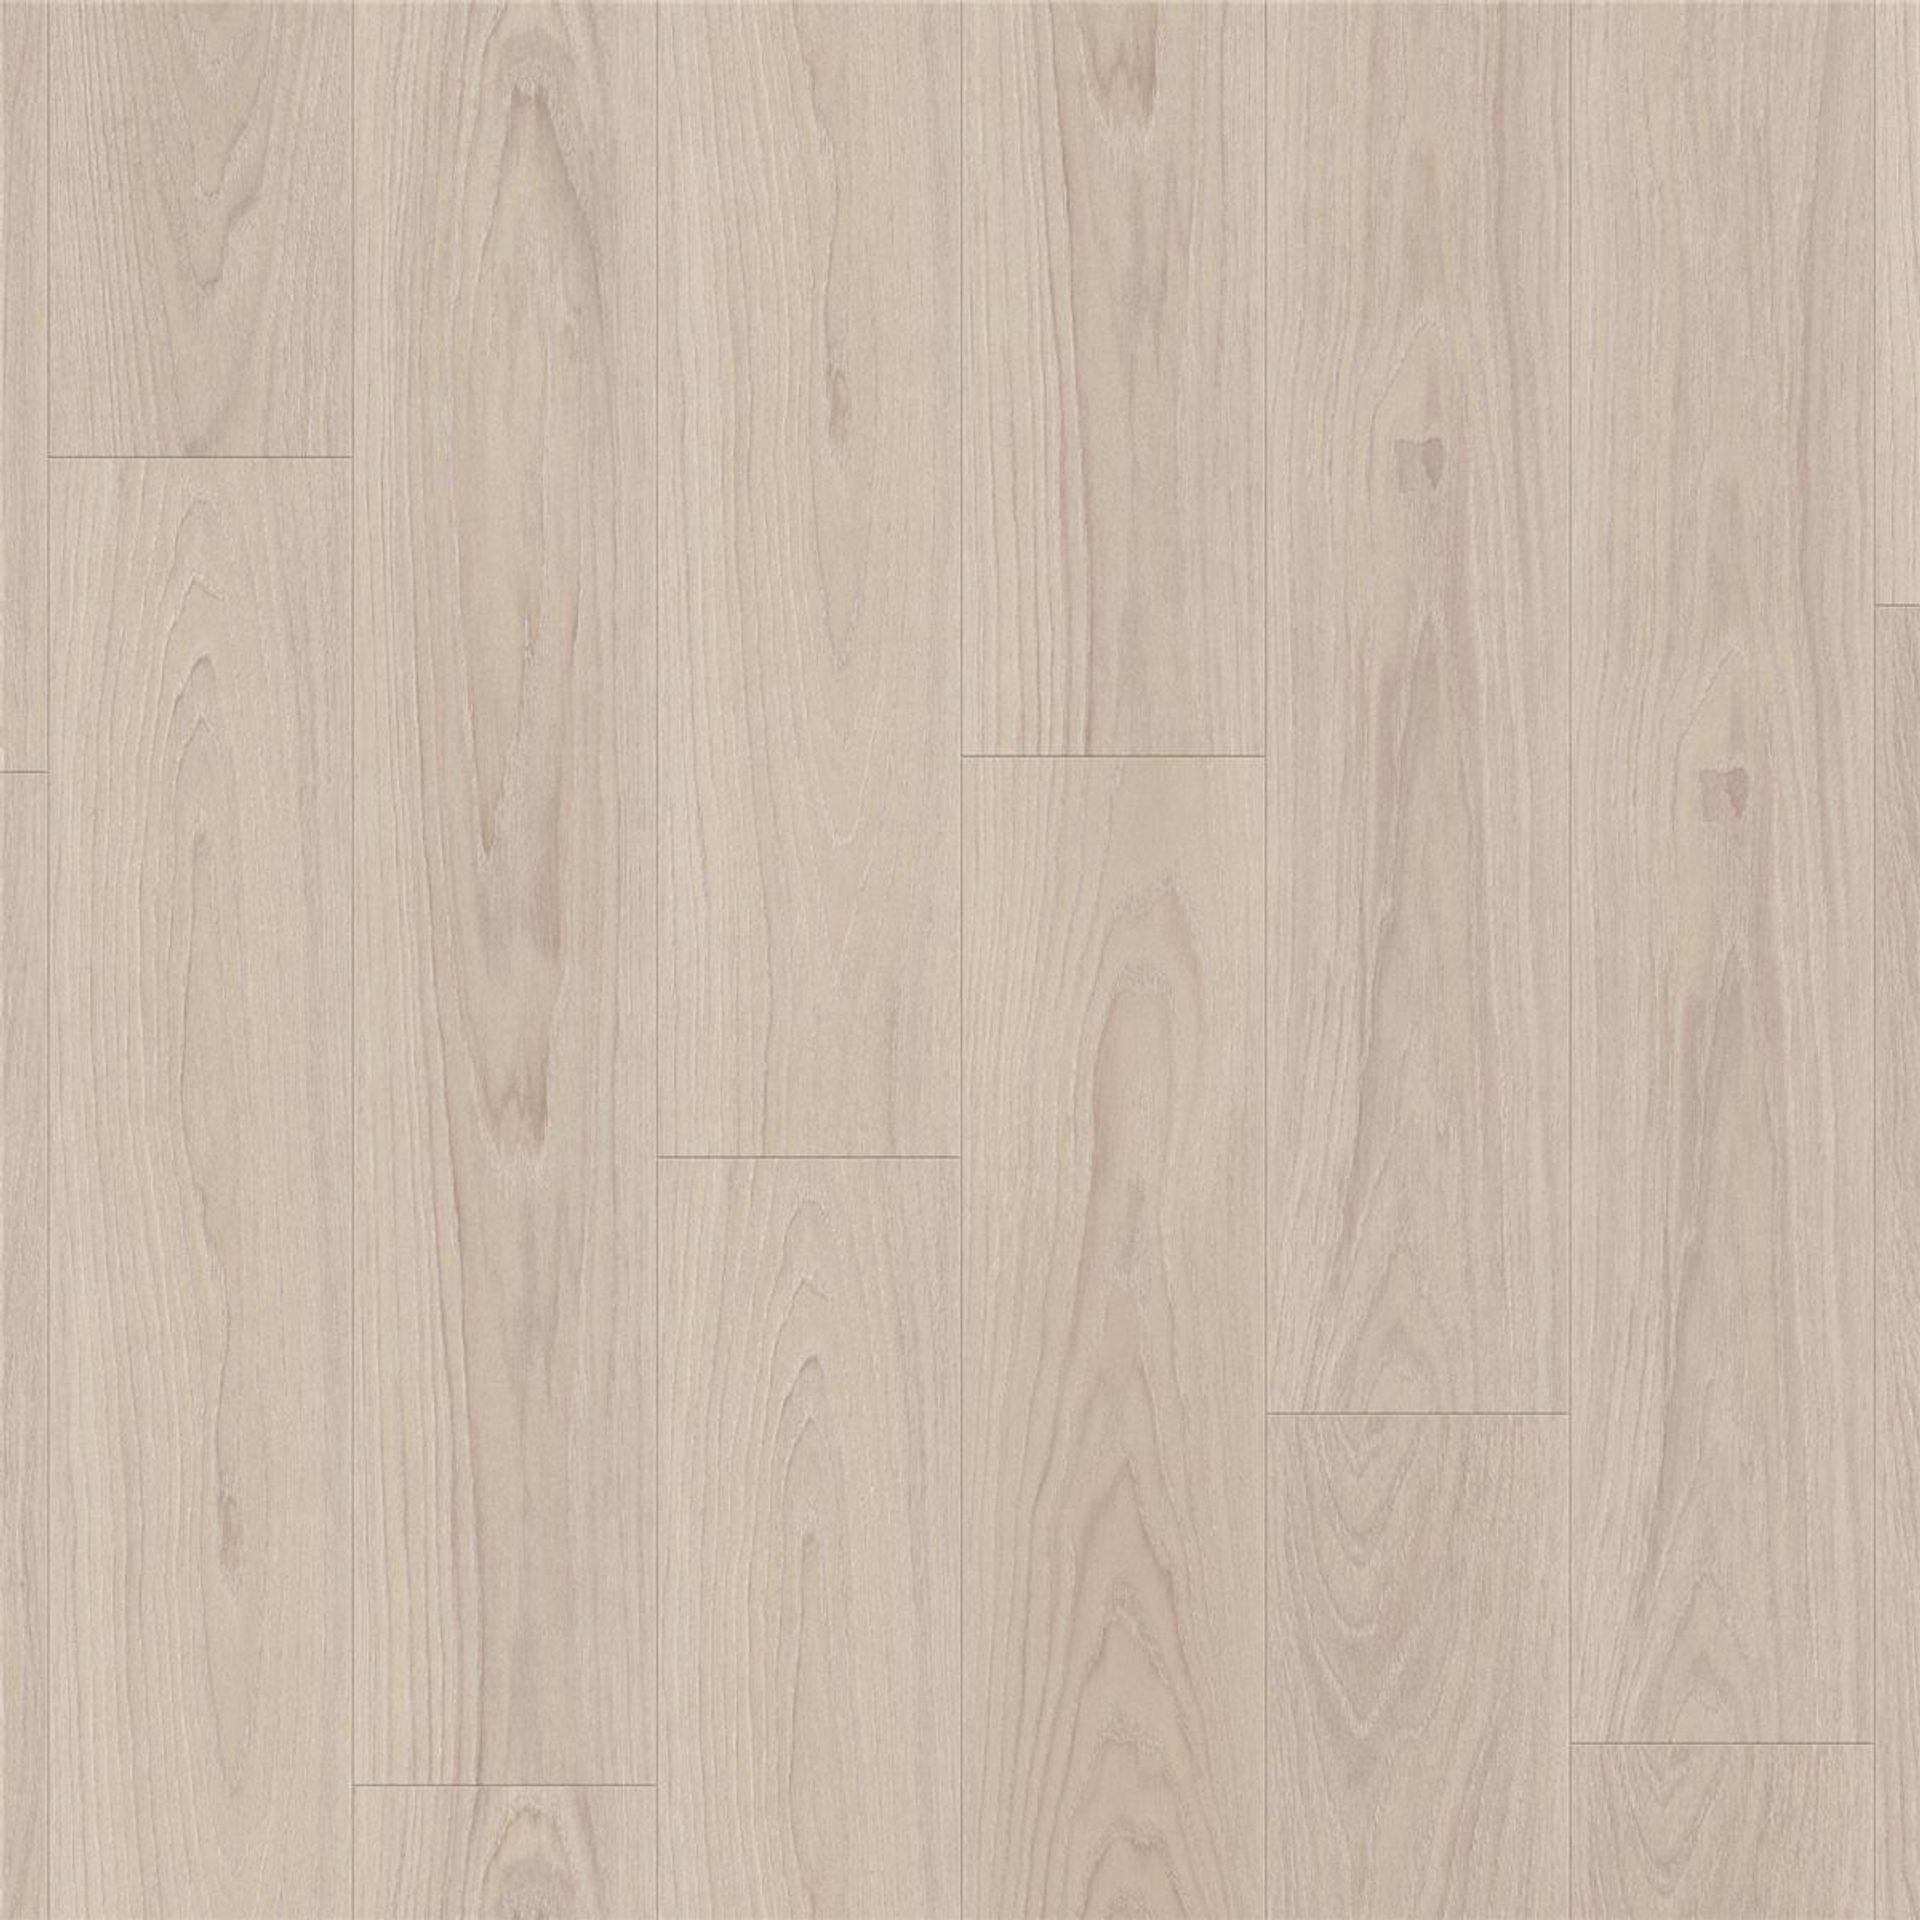 Designboden AUTHENTICS-Pearl Oak-Candis Planke 120 cm x 20 cm - Nutzschichtdicke 0,55 mm